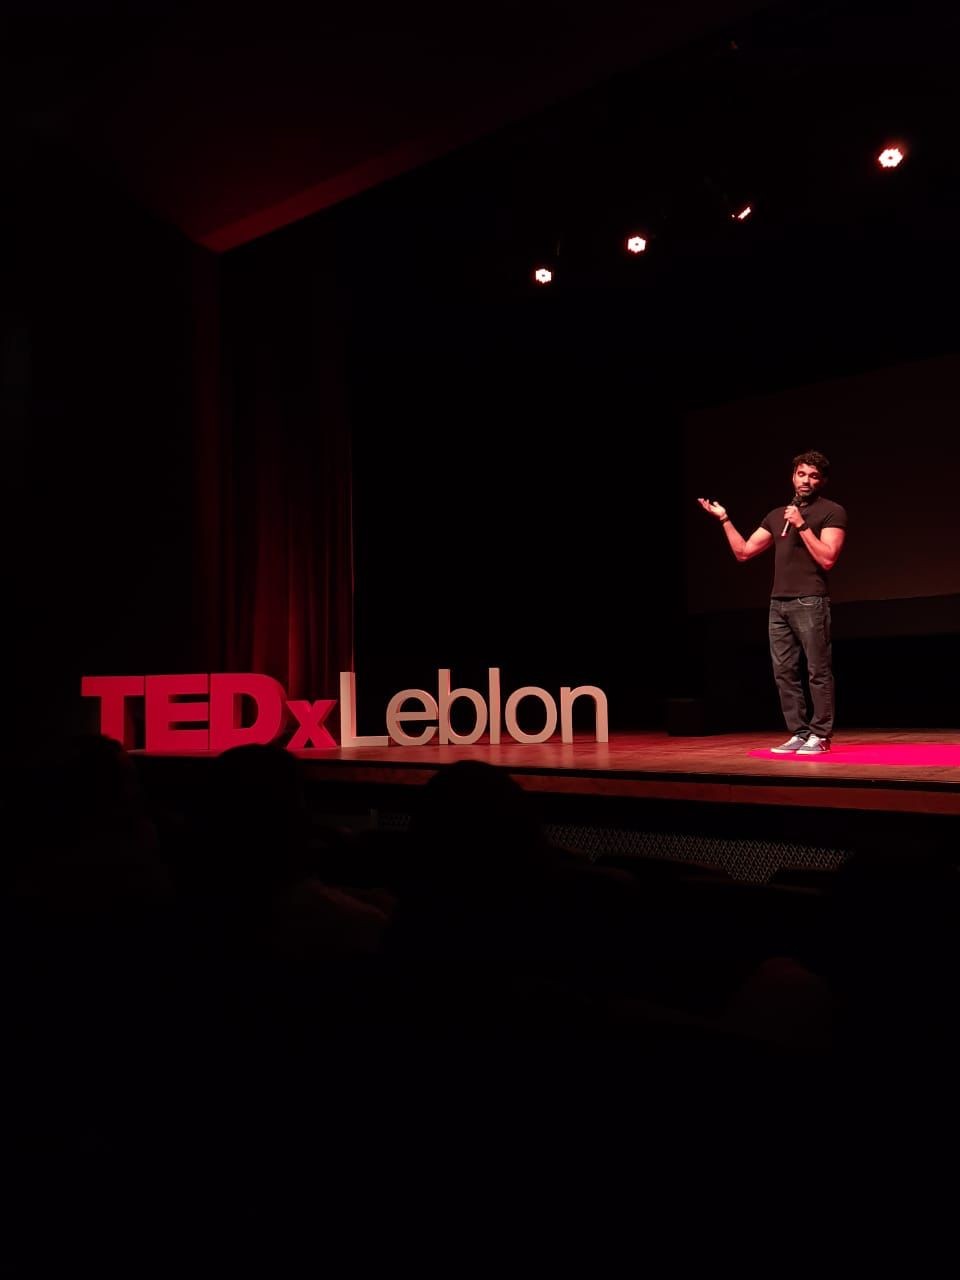 Hora durante sua participação no TEDx Leblon (Foto: Acervo Pessoal)